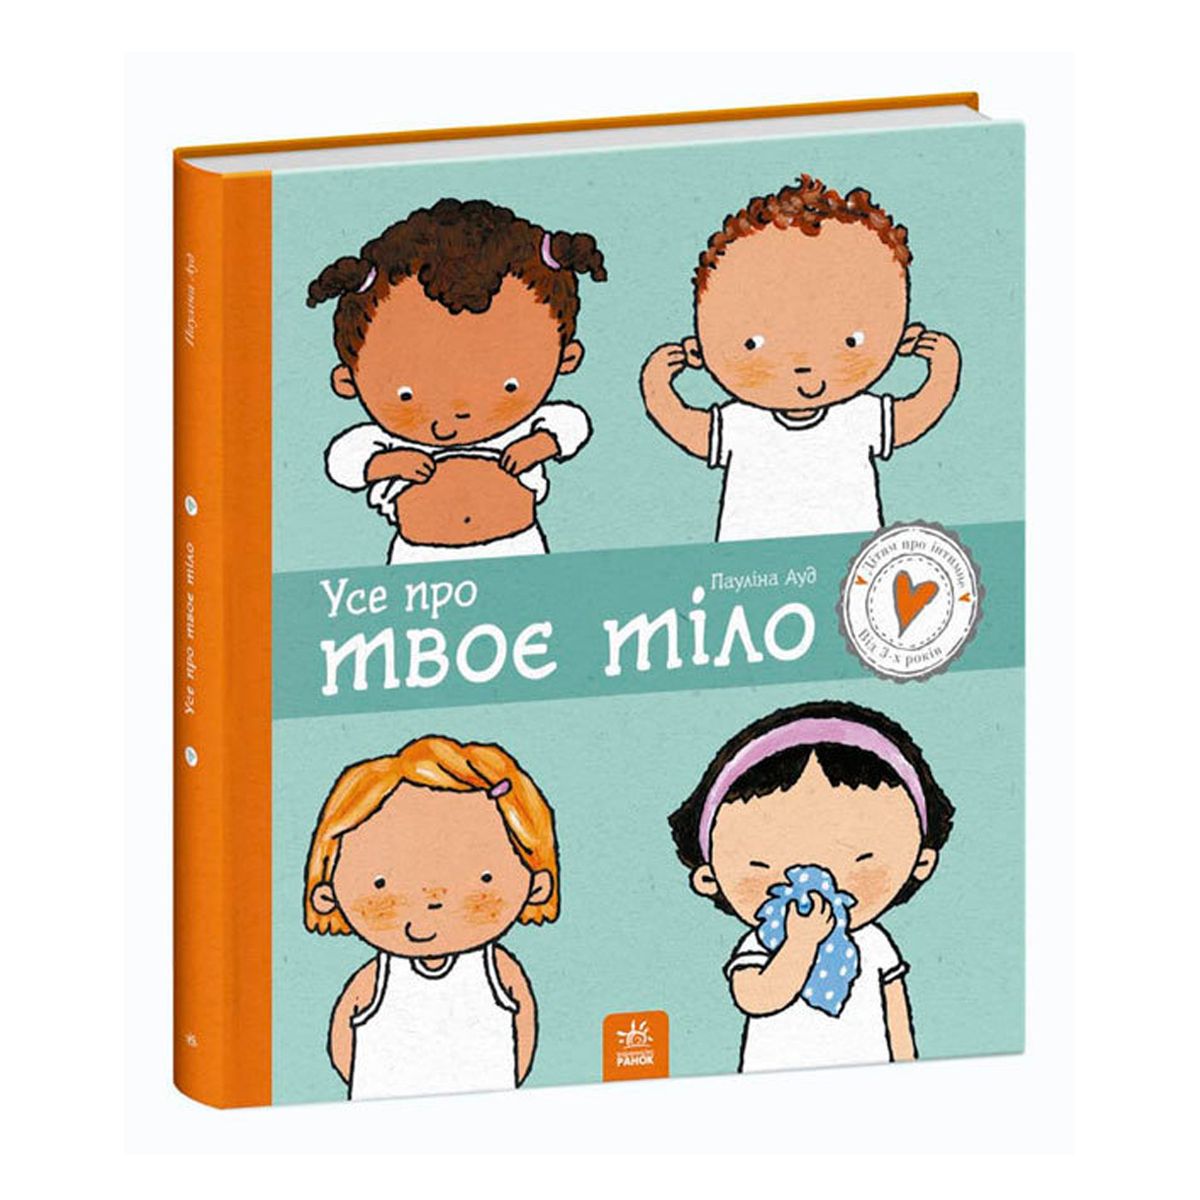 Книга "Детям об интимном: Все о твоем теле"